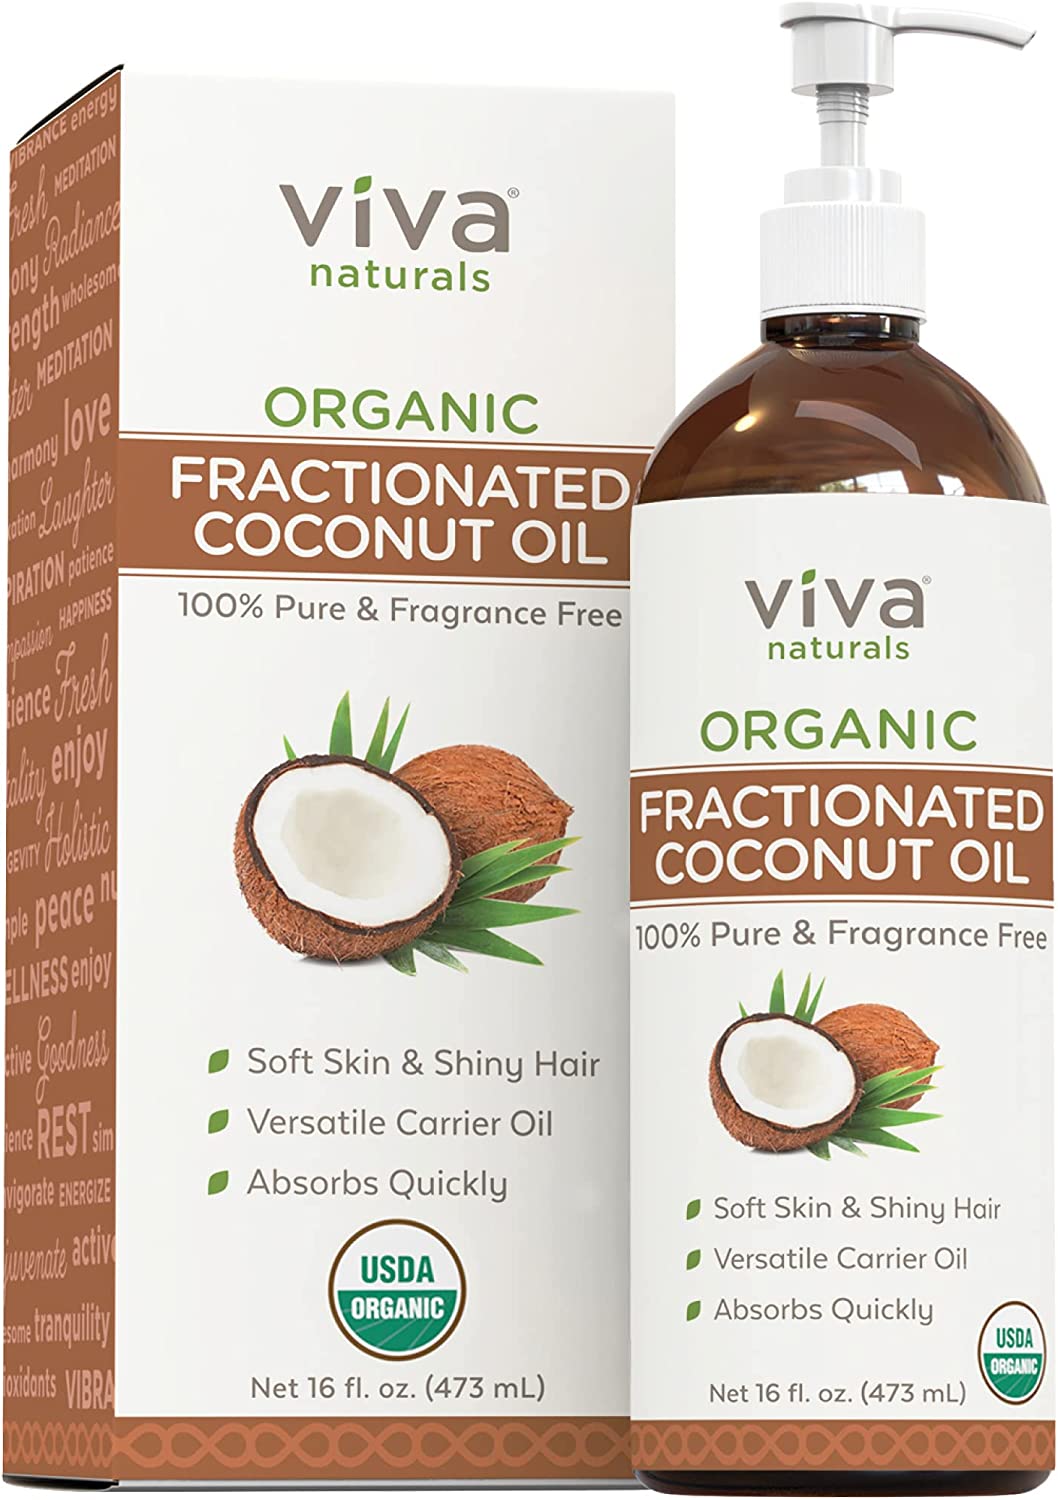  4. Viva Organic Fractionated Coconut Oil 